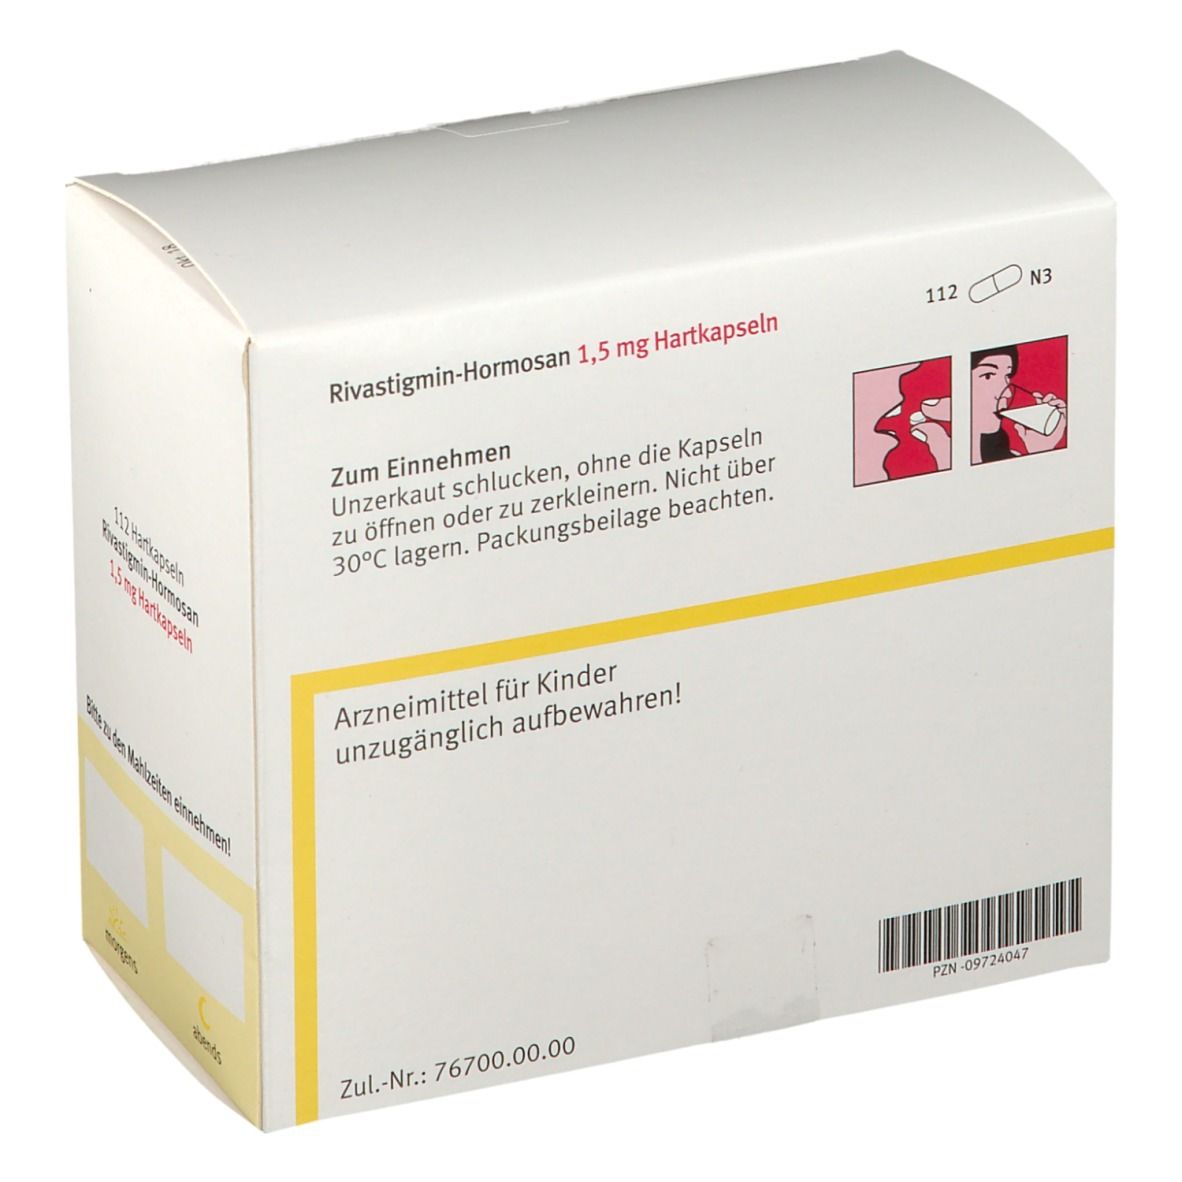 Rivastigmin-Hormosan 1,5 mg